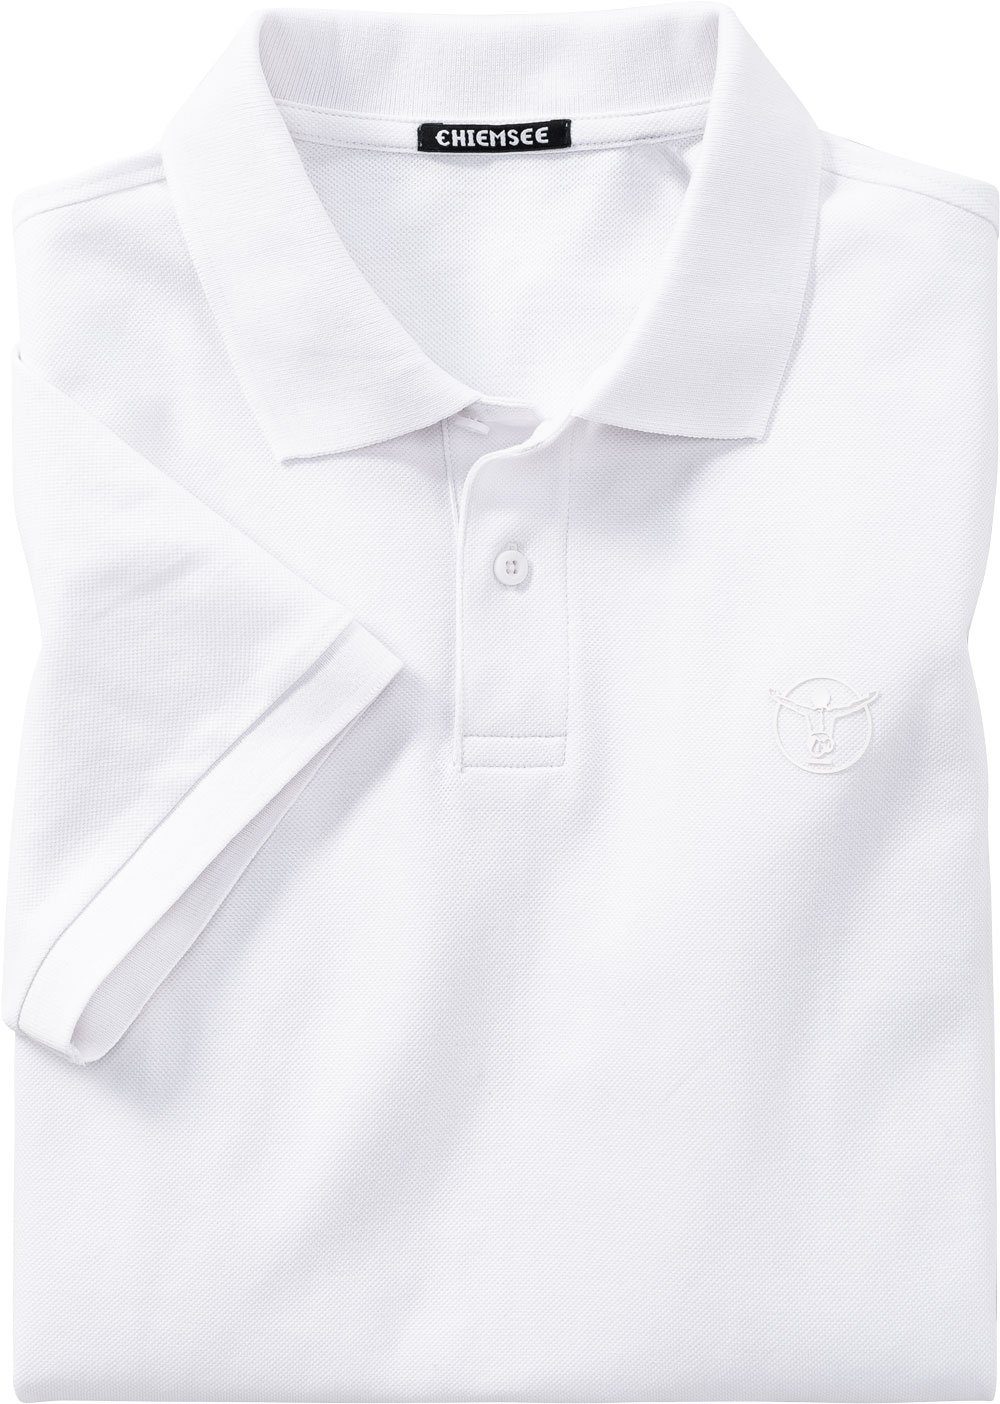 Chiemsee aus weiß Poloshirt reinem Baumwoll-Piqué